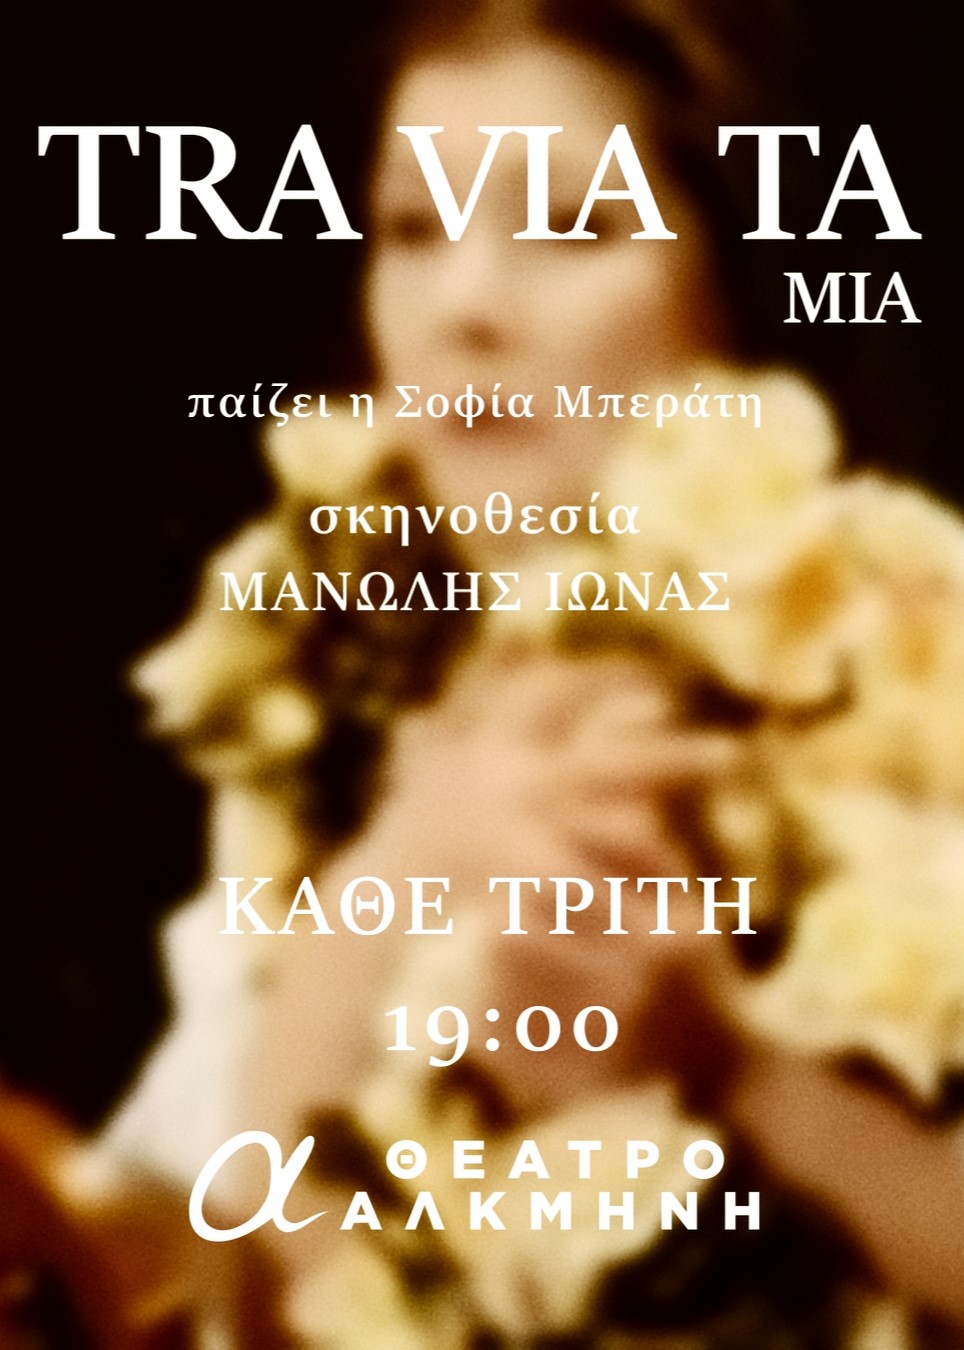 traviata-mia